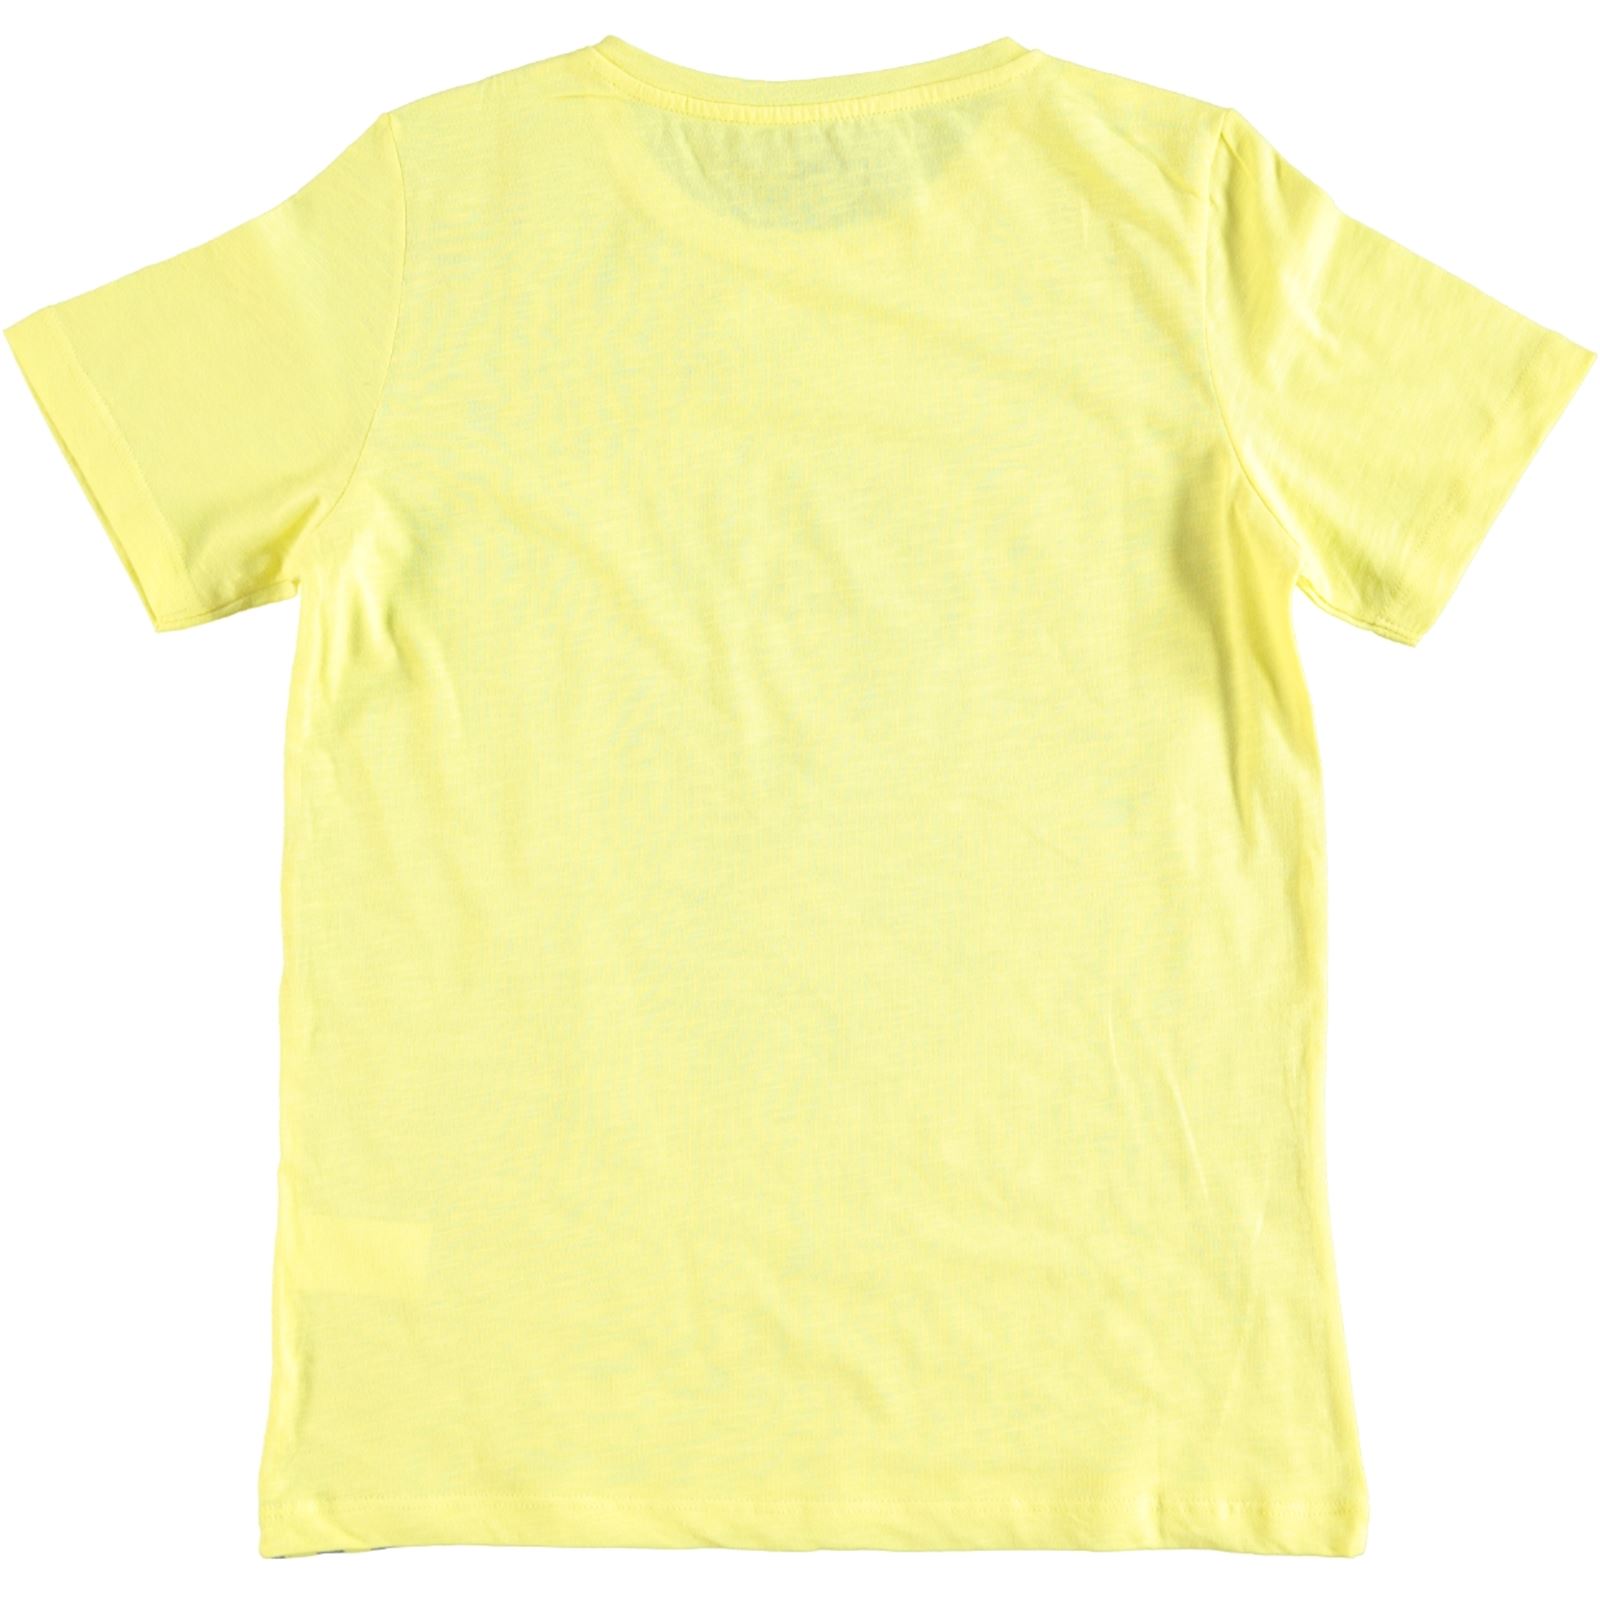 Cvl Erkek Çocuk Tişört 10-13 Yaş Sarı